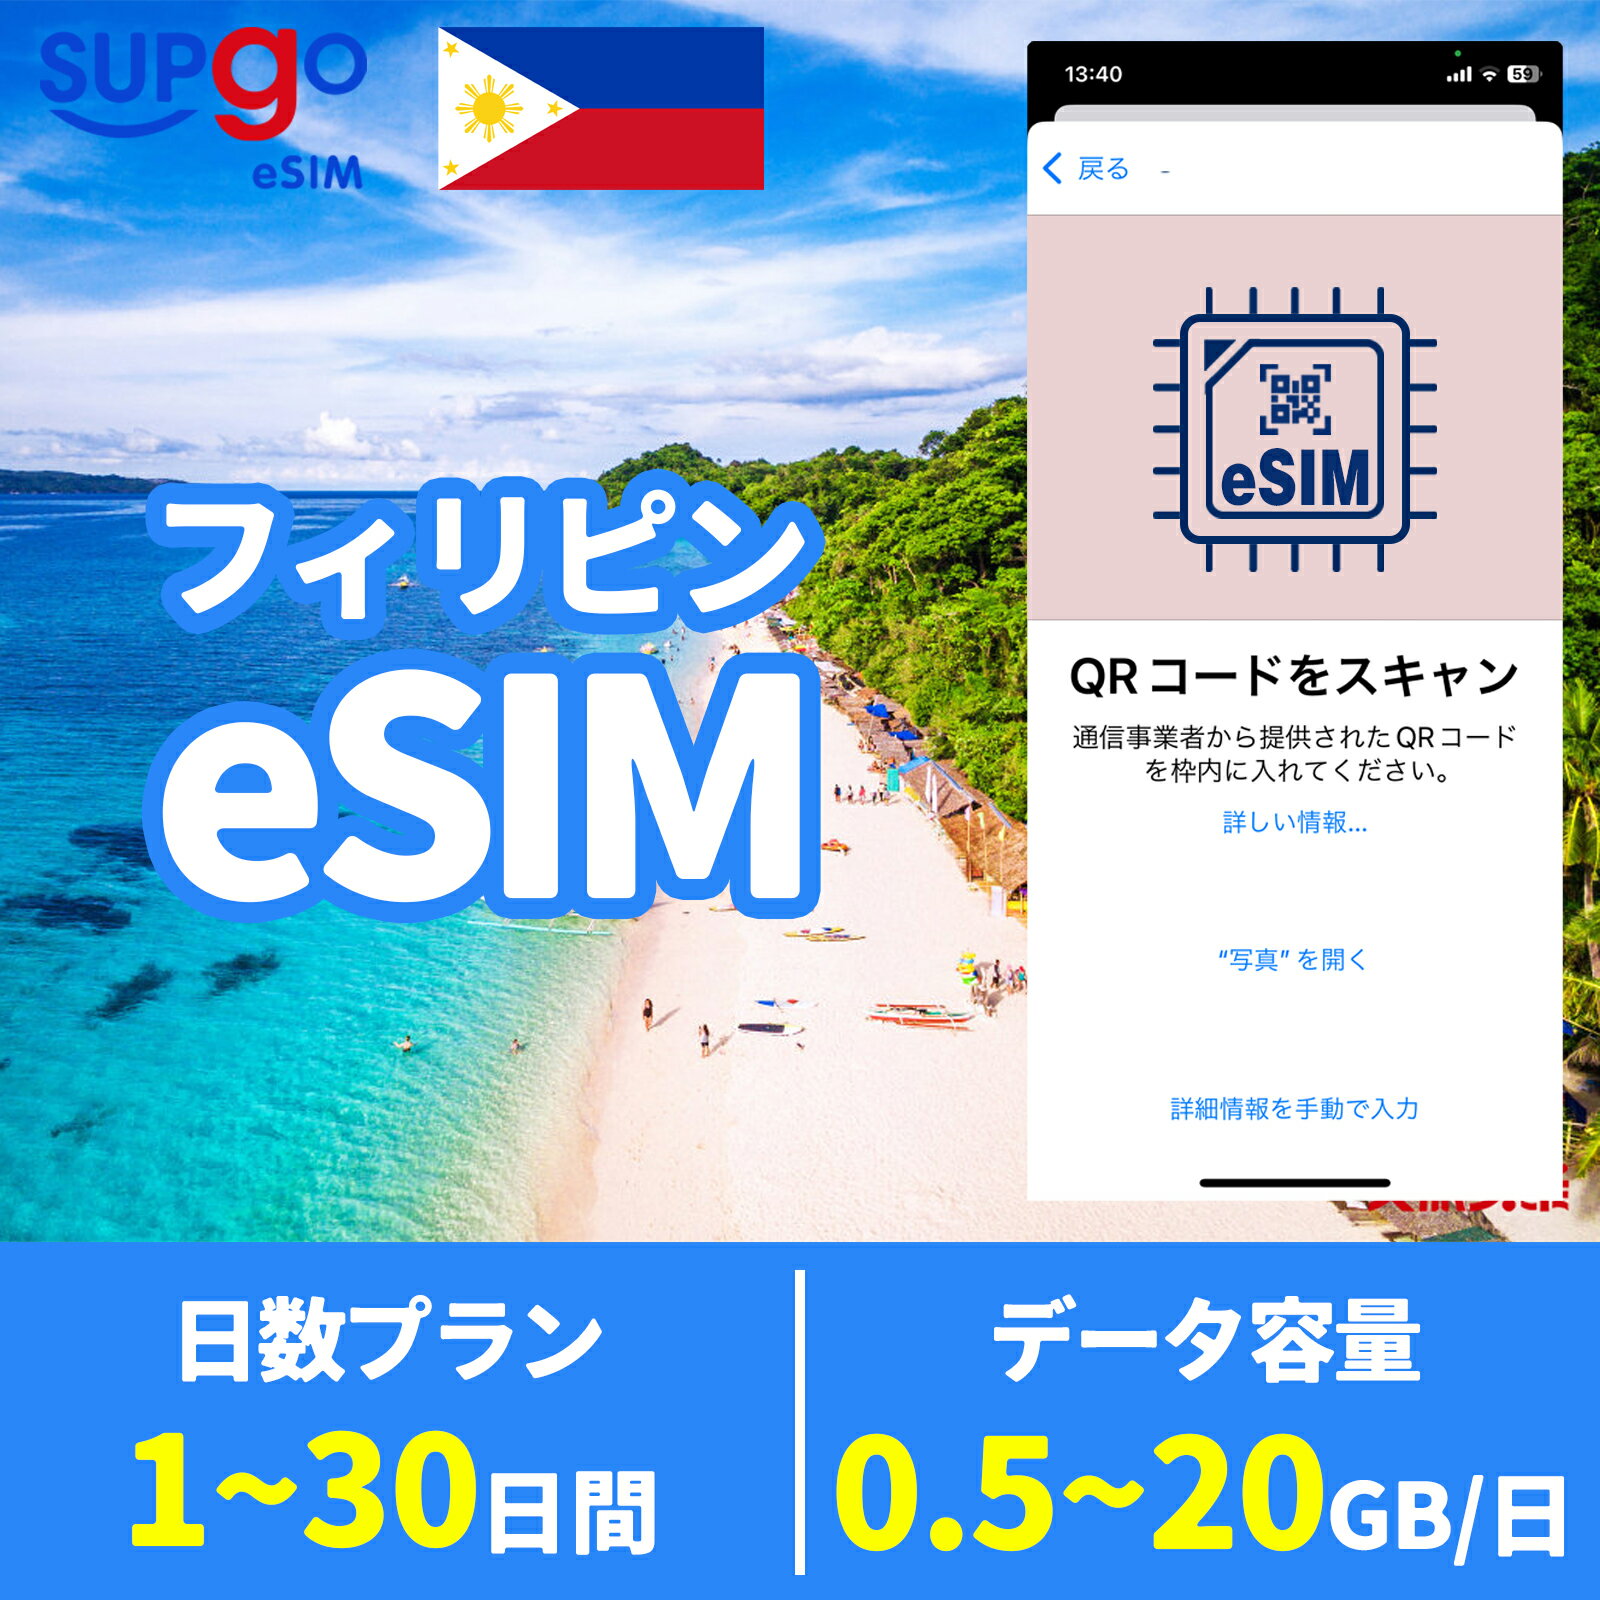 商品情報 商品名 eSIM フィリピン フイリッピン Philippines 1日間 3日間 5日間 7日間 10日間 15日間 20日間 30日間 データ無制限 1GB 5GB 10GB 20GB 高速 データ通信専用 SIMタイプ eSIM 使用可能日数 1日間 3日間 5日間 7日間 10日間 15日間 20日間 30日間 データ容量 高速データ500MB/日 のち無制限（500MB以外128Kbps） 高速データ1GB/日 のち無制限（1GB以外128Kbps） 高速データ2GB/日 のち無制限（2GB以外128Kbps） 高速データ合計3GB のち無制限（3GB以外128Kbps） 高速データ合計5GB のち無制限（5GB以外128Kbps） 高速データ合計10GB のち無制限（10GB以外128Kbps） 高速データ合計20GB のち無制限（20GB以外128Kbps） 対応地域 フィリピン Can be used in the following regions: Philippines 注意事項 電話およびメッセージの機能がありません。30日以内に携帯電話に読み込んでください。それ以降は期限切れとなります。 購入されたデータパッケージは、eSIMがデバイスにインストールされると自動的にアクティブ化されます。 対応地域でのみアクティブにすることができます。海外に行く1日前にeSIMコードをスキャンすることをお勧めいたします。 ご注意：eSIM通信プランに日本が含まれている場合、日本で設定とアクティベート当日に時間がカウントされます。